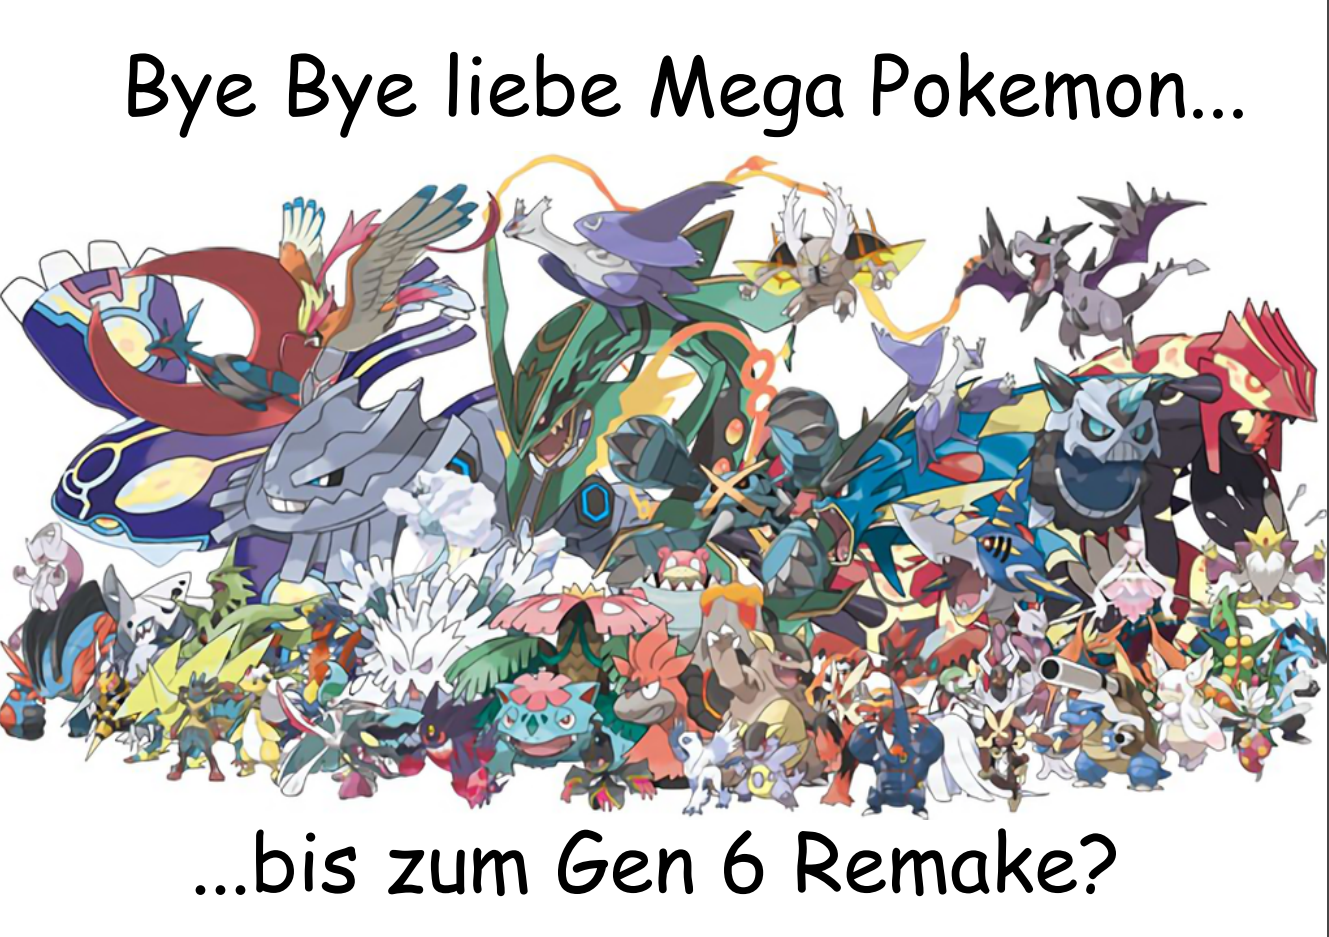 Bye Bye Mega Pokemon.png. 